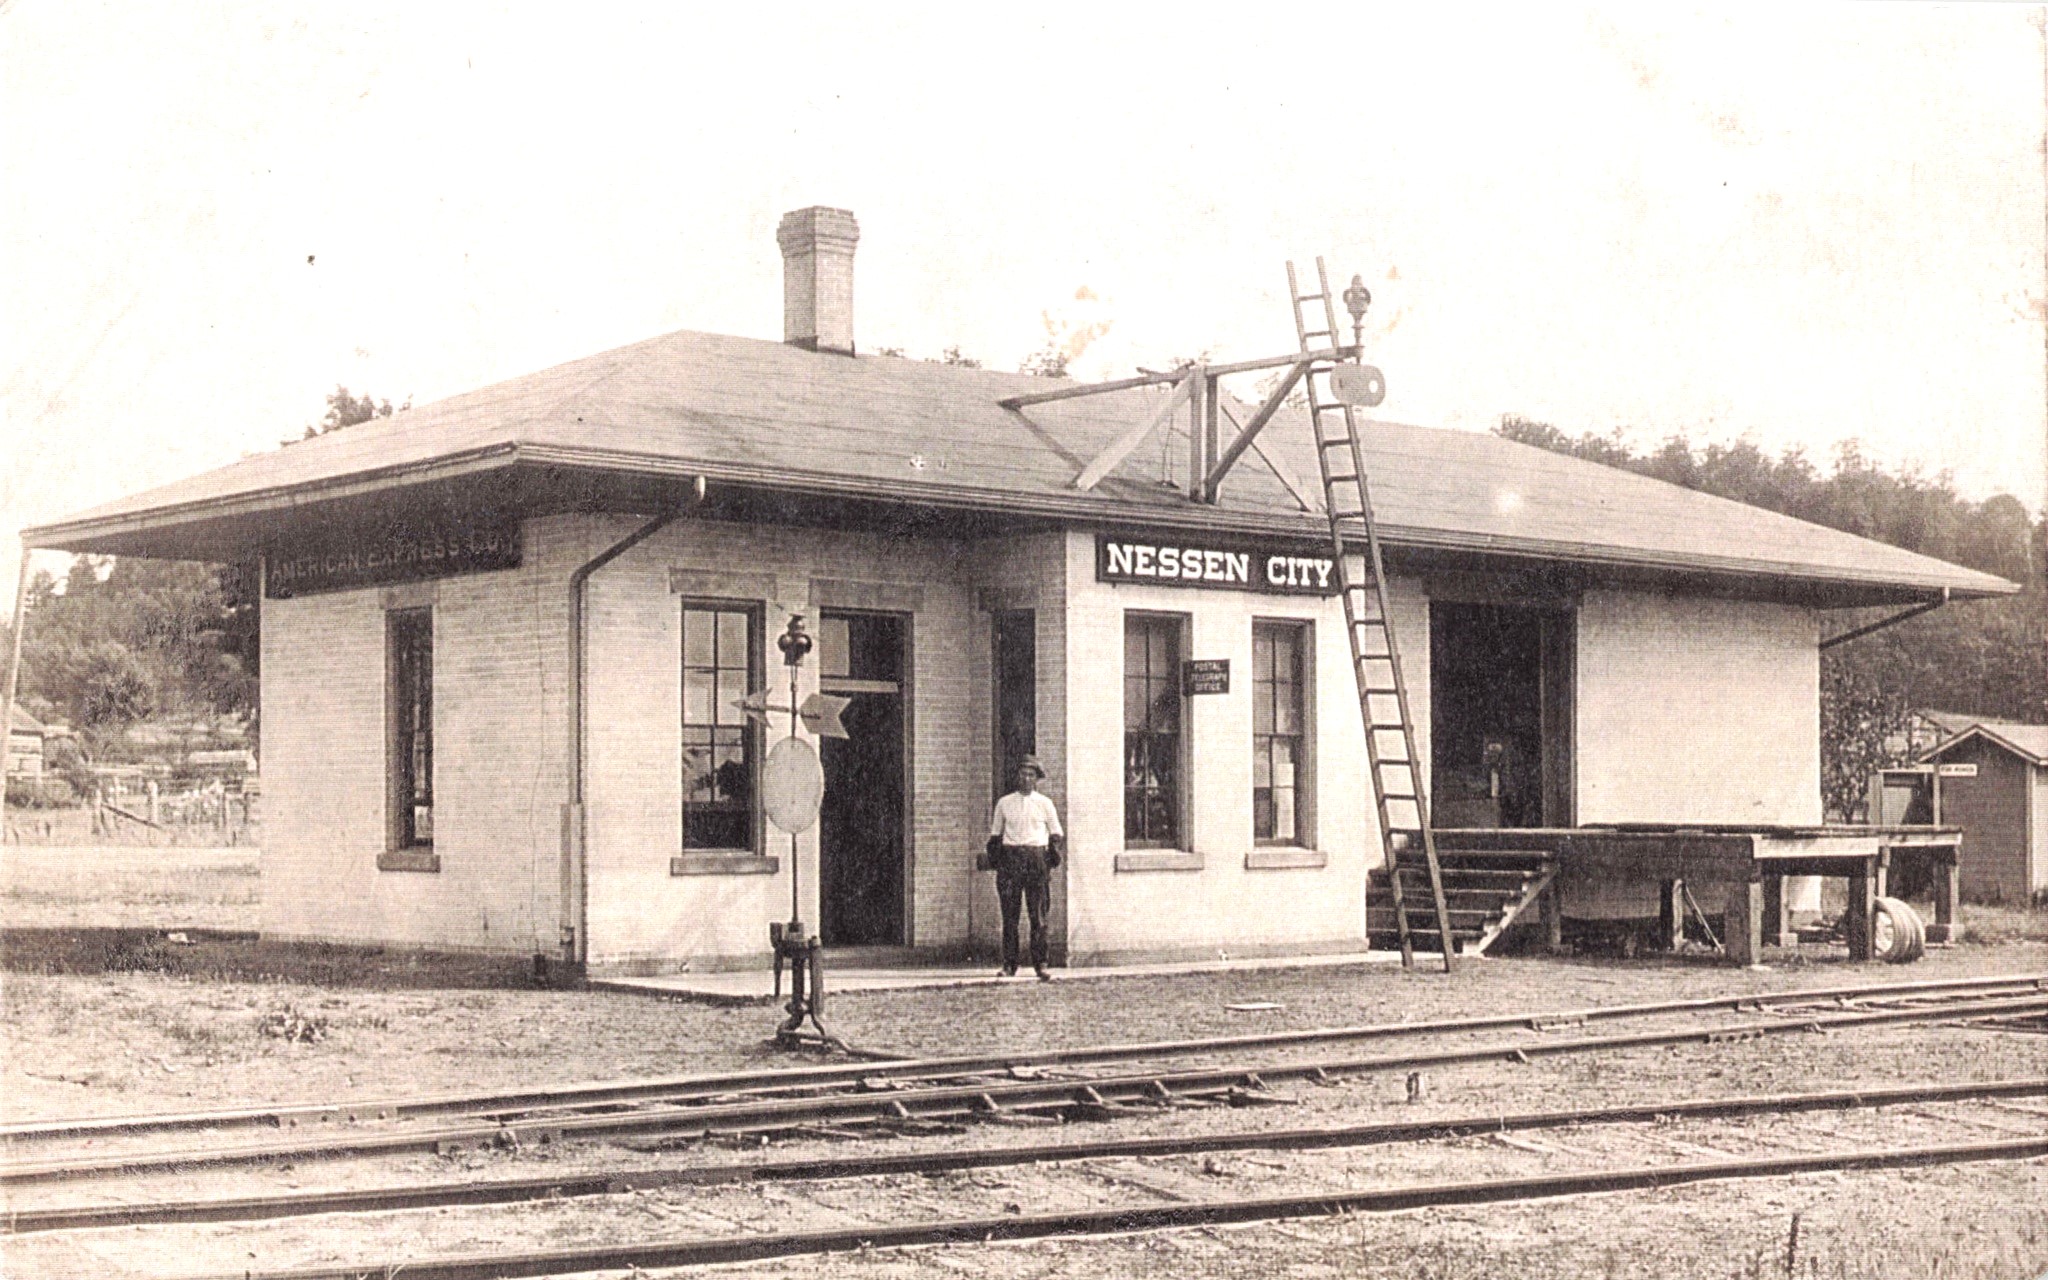 Nessen City depot